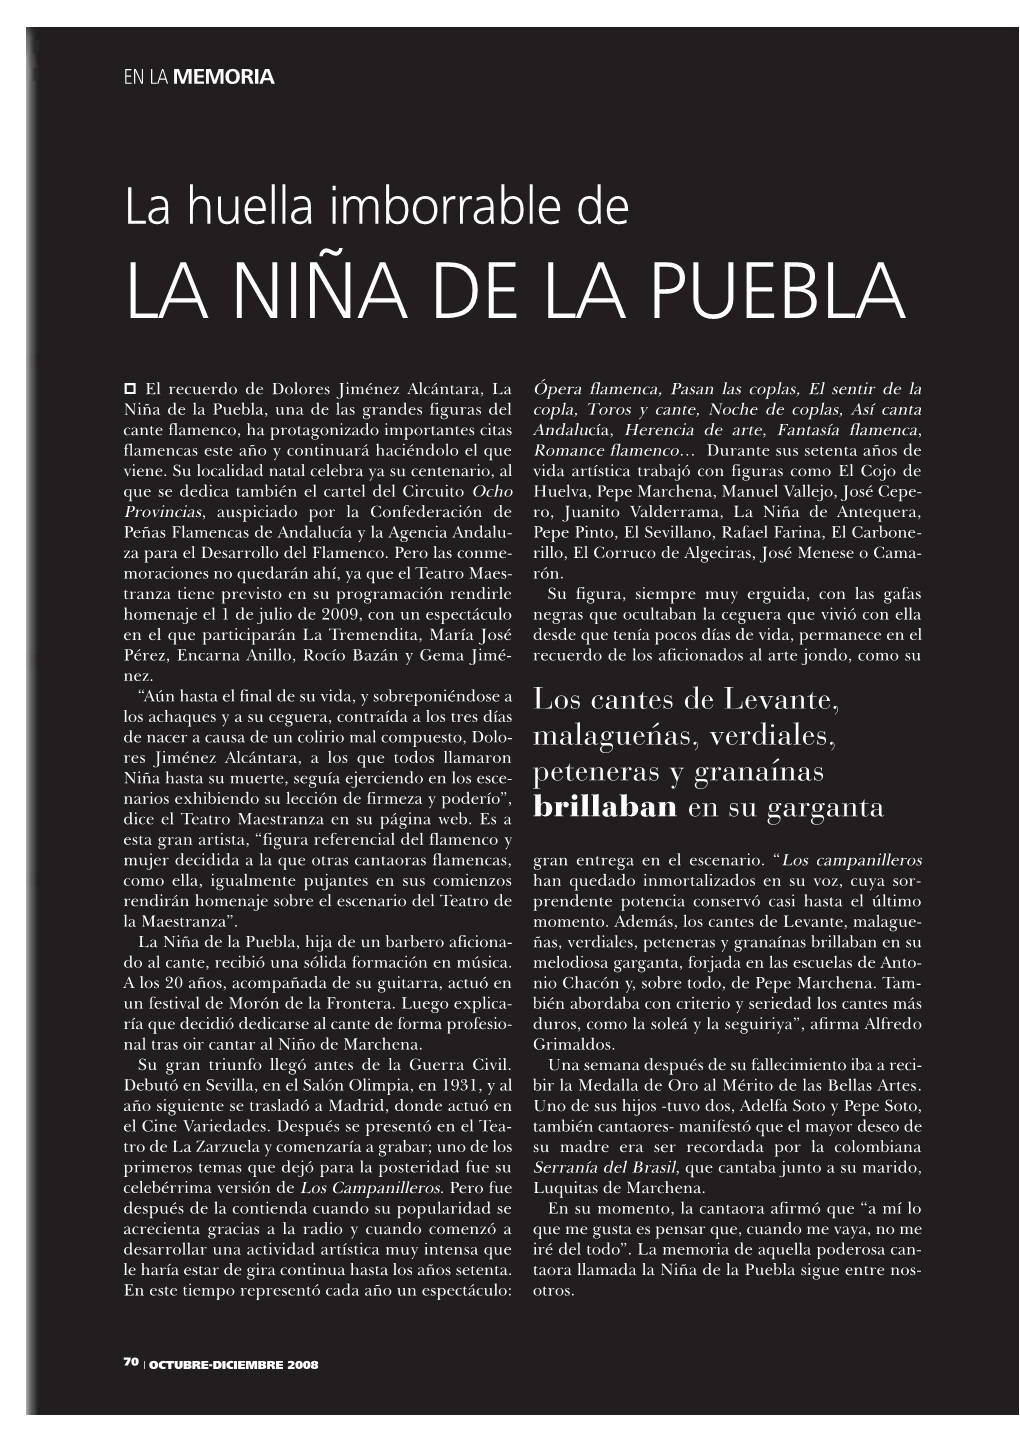 Revista 8 Pag 70-71 Recuerdo De La Niña De La Puebla